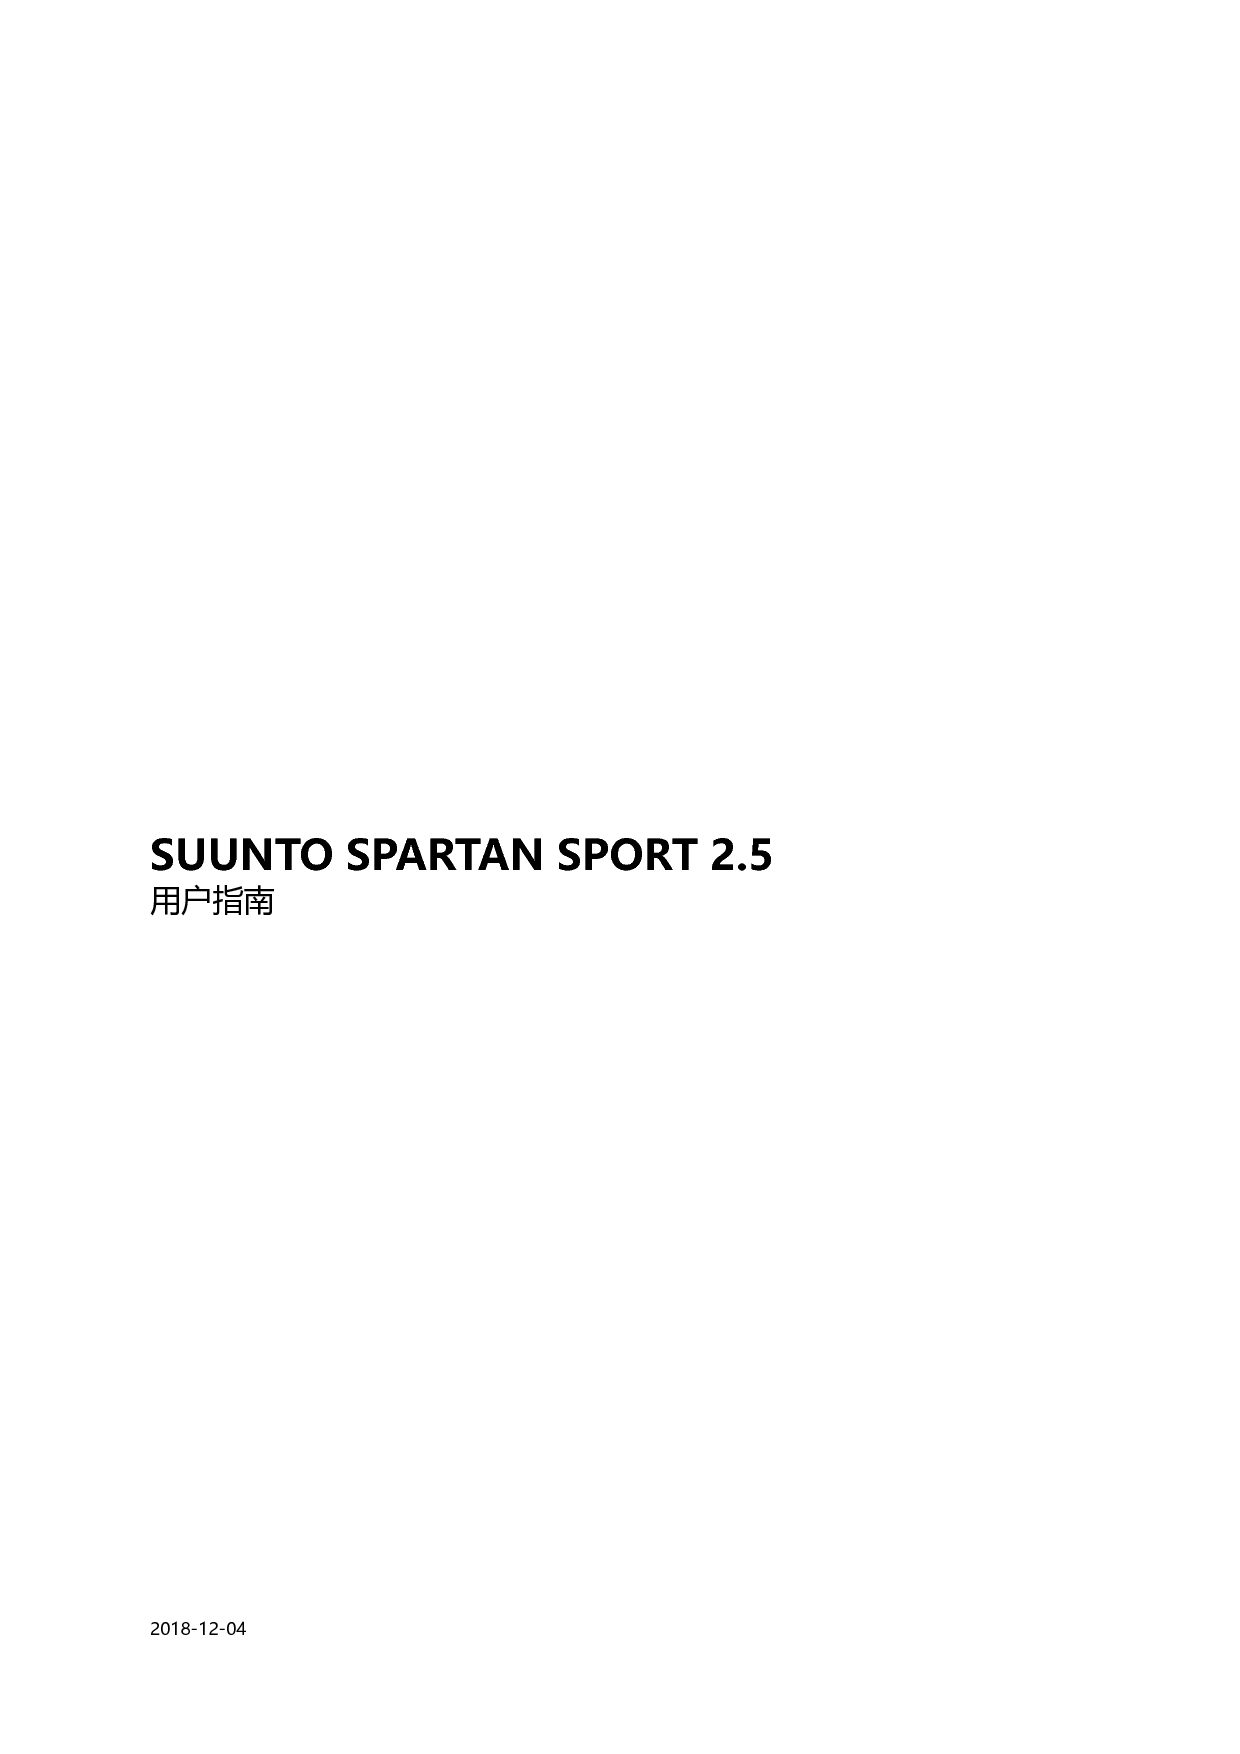 松拓 Suunto SPARTAN SPORT 2.5 用户指南 封面